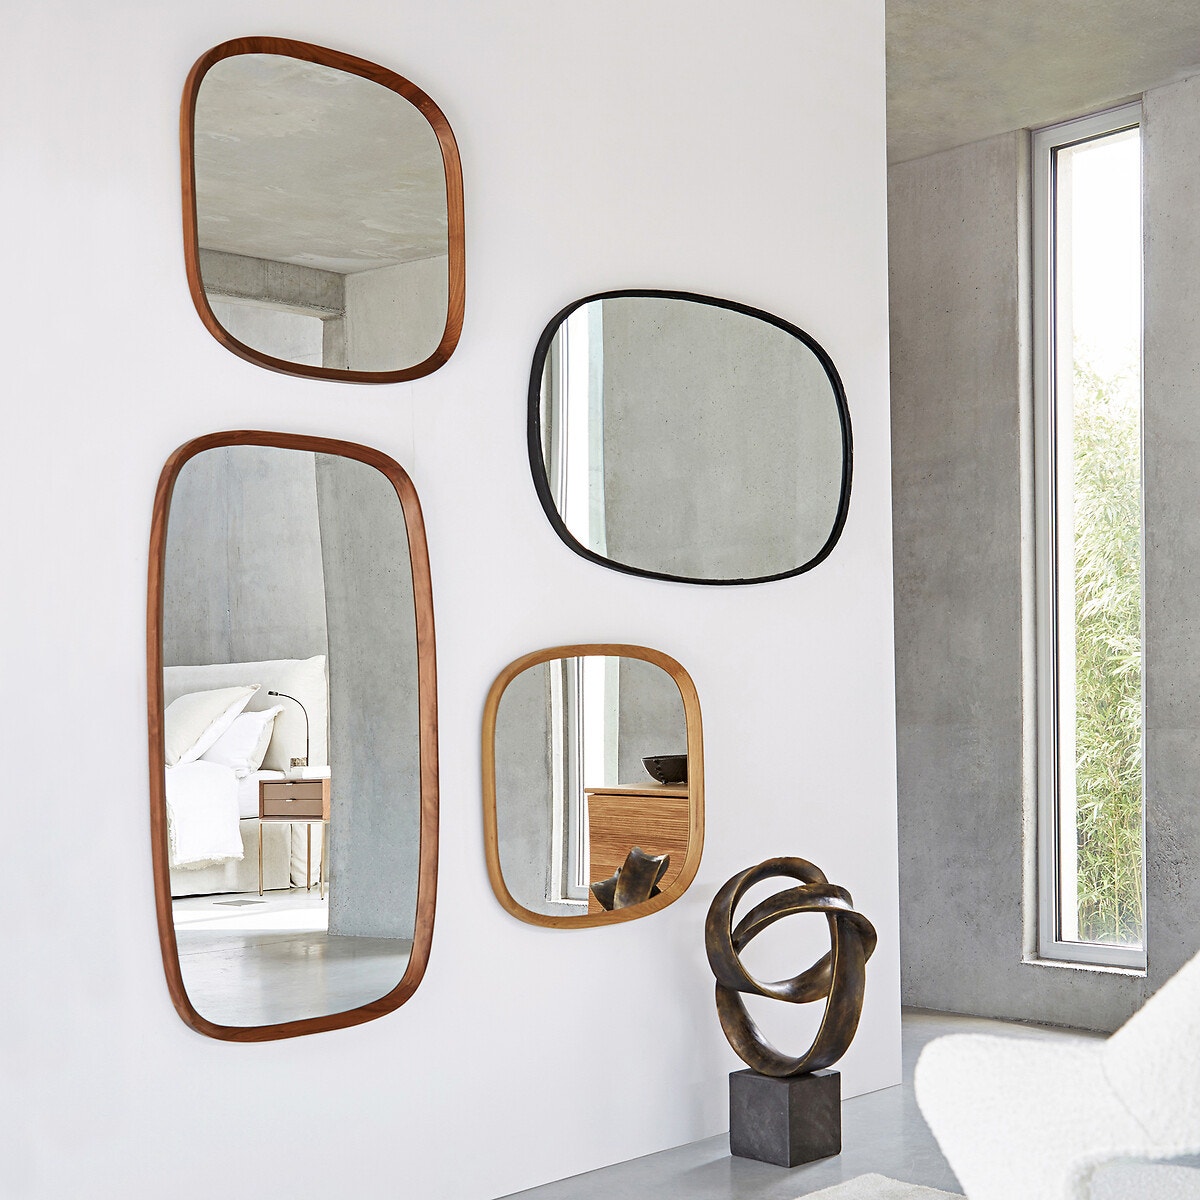 Καθρέφτης με στρογγυλεμένες γωνίες και πλαίσιο από μασίφ ξύλο καρυδιάς, Orion